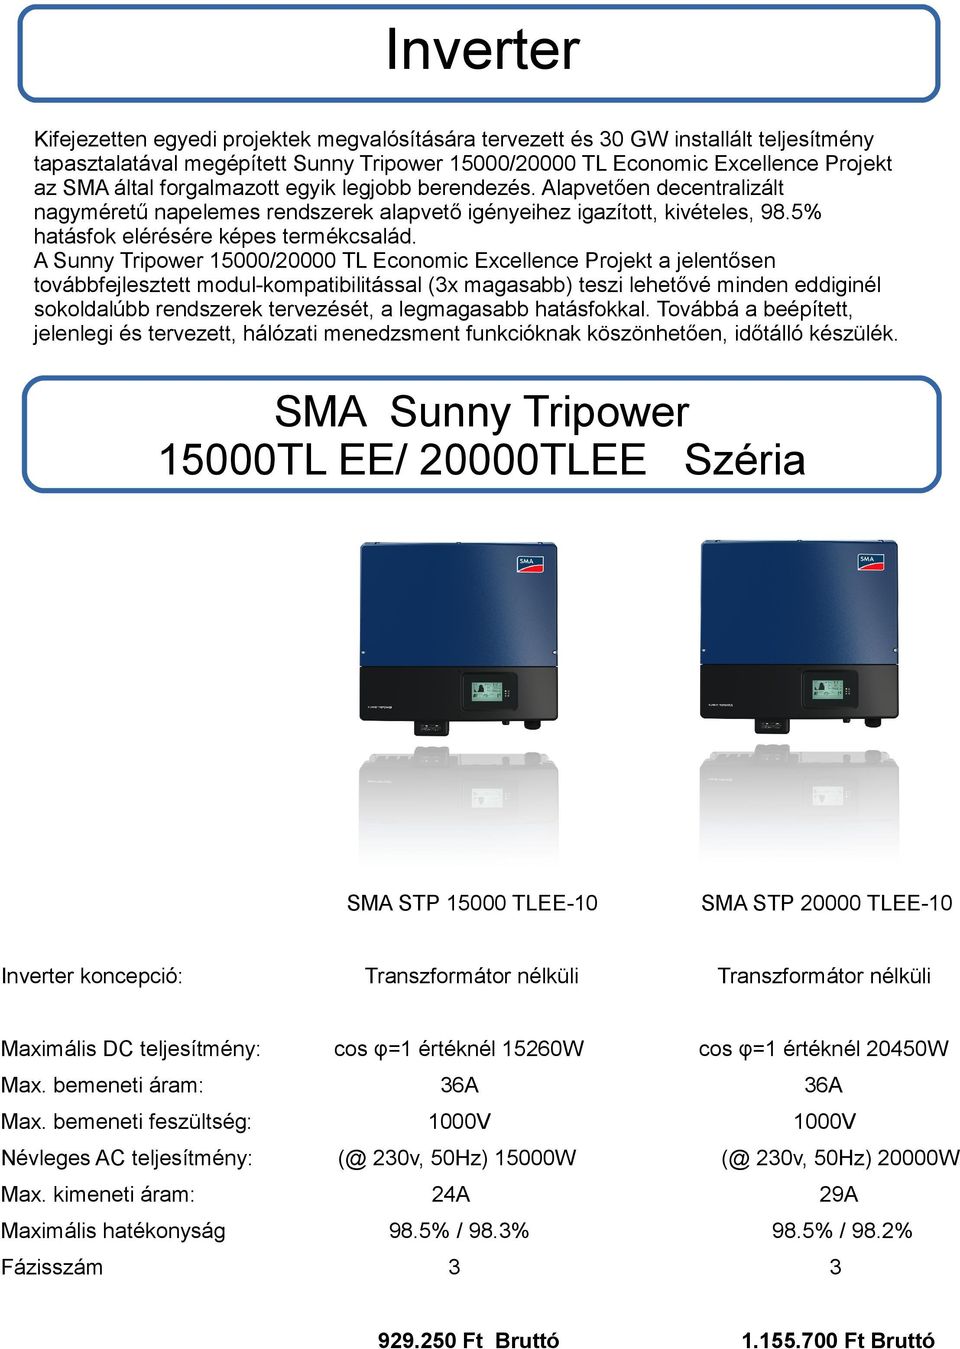 A Sunny Tripower 15000/20000 TL Economic Excellence Projekt a jelentősen továbbfejlesztett modul-kompatibilitással (3x magasabb) teszi lehetővé minden eddiginél sokoldalúbb rendszerek tervezését, a